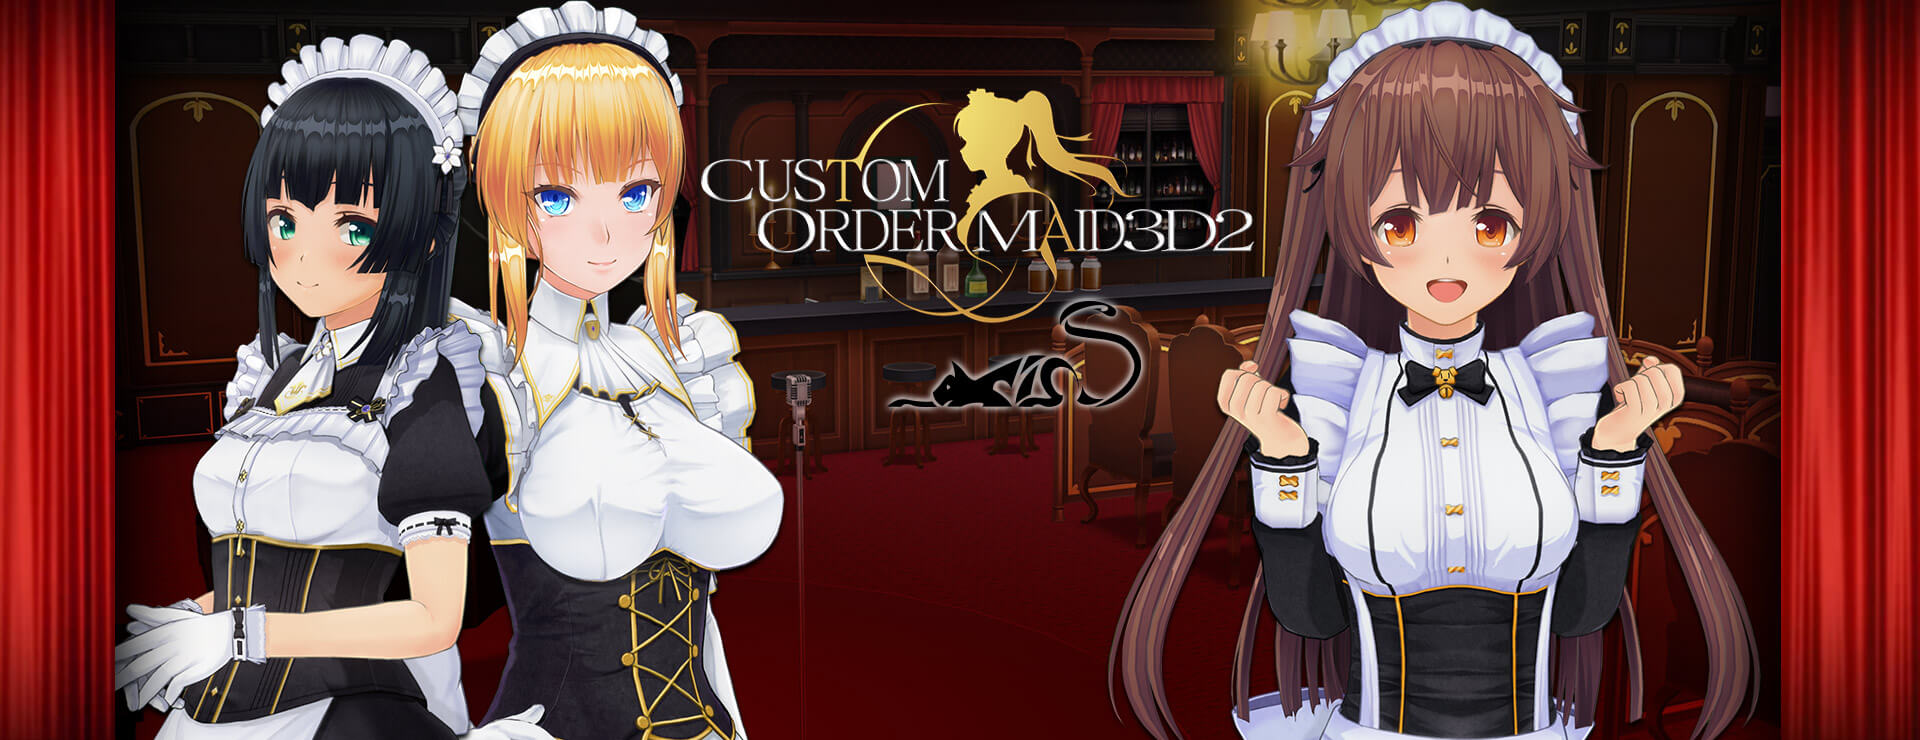 Custom Order Maid 3D2 Enjoy Empire Life GP-01 Bundle - Simulación Juego